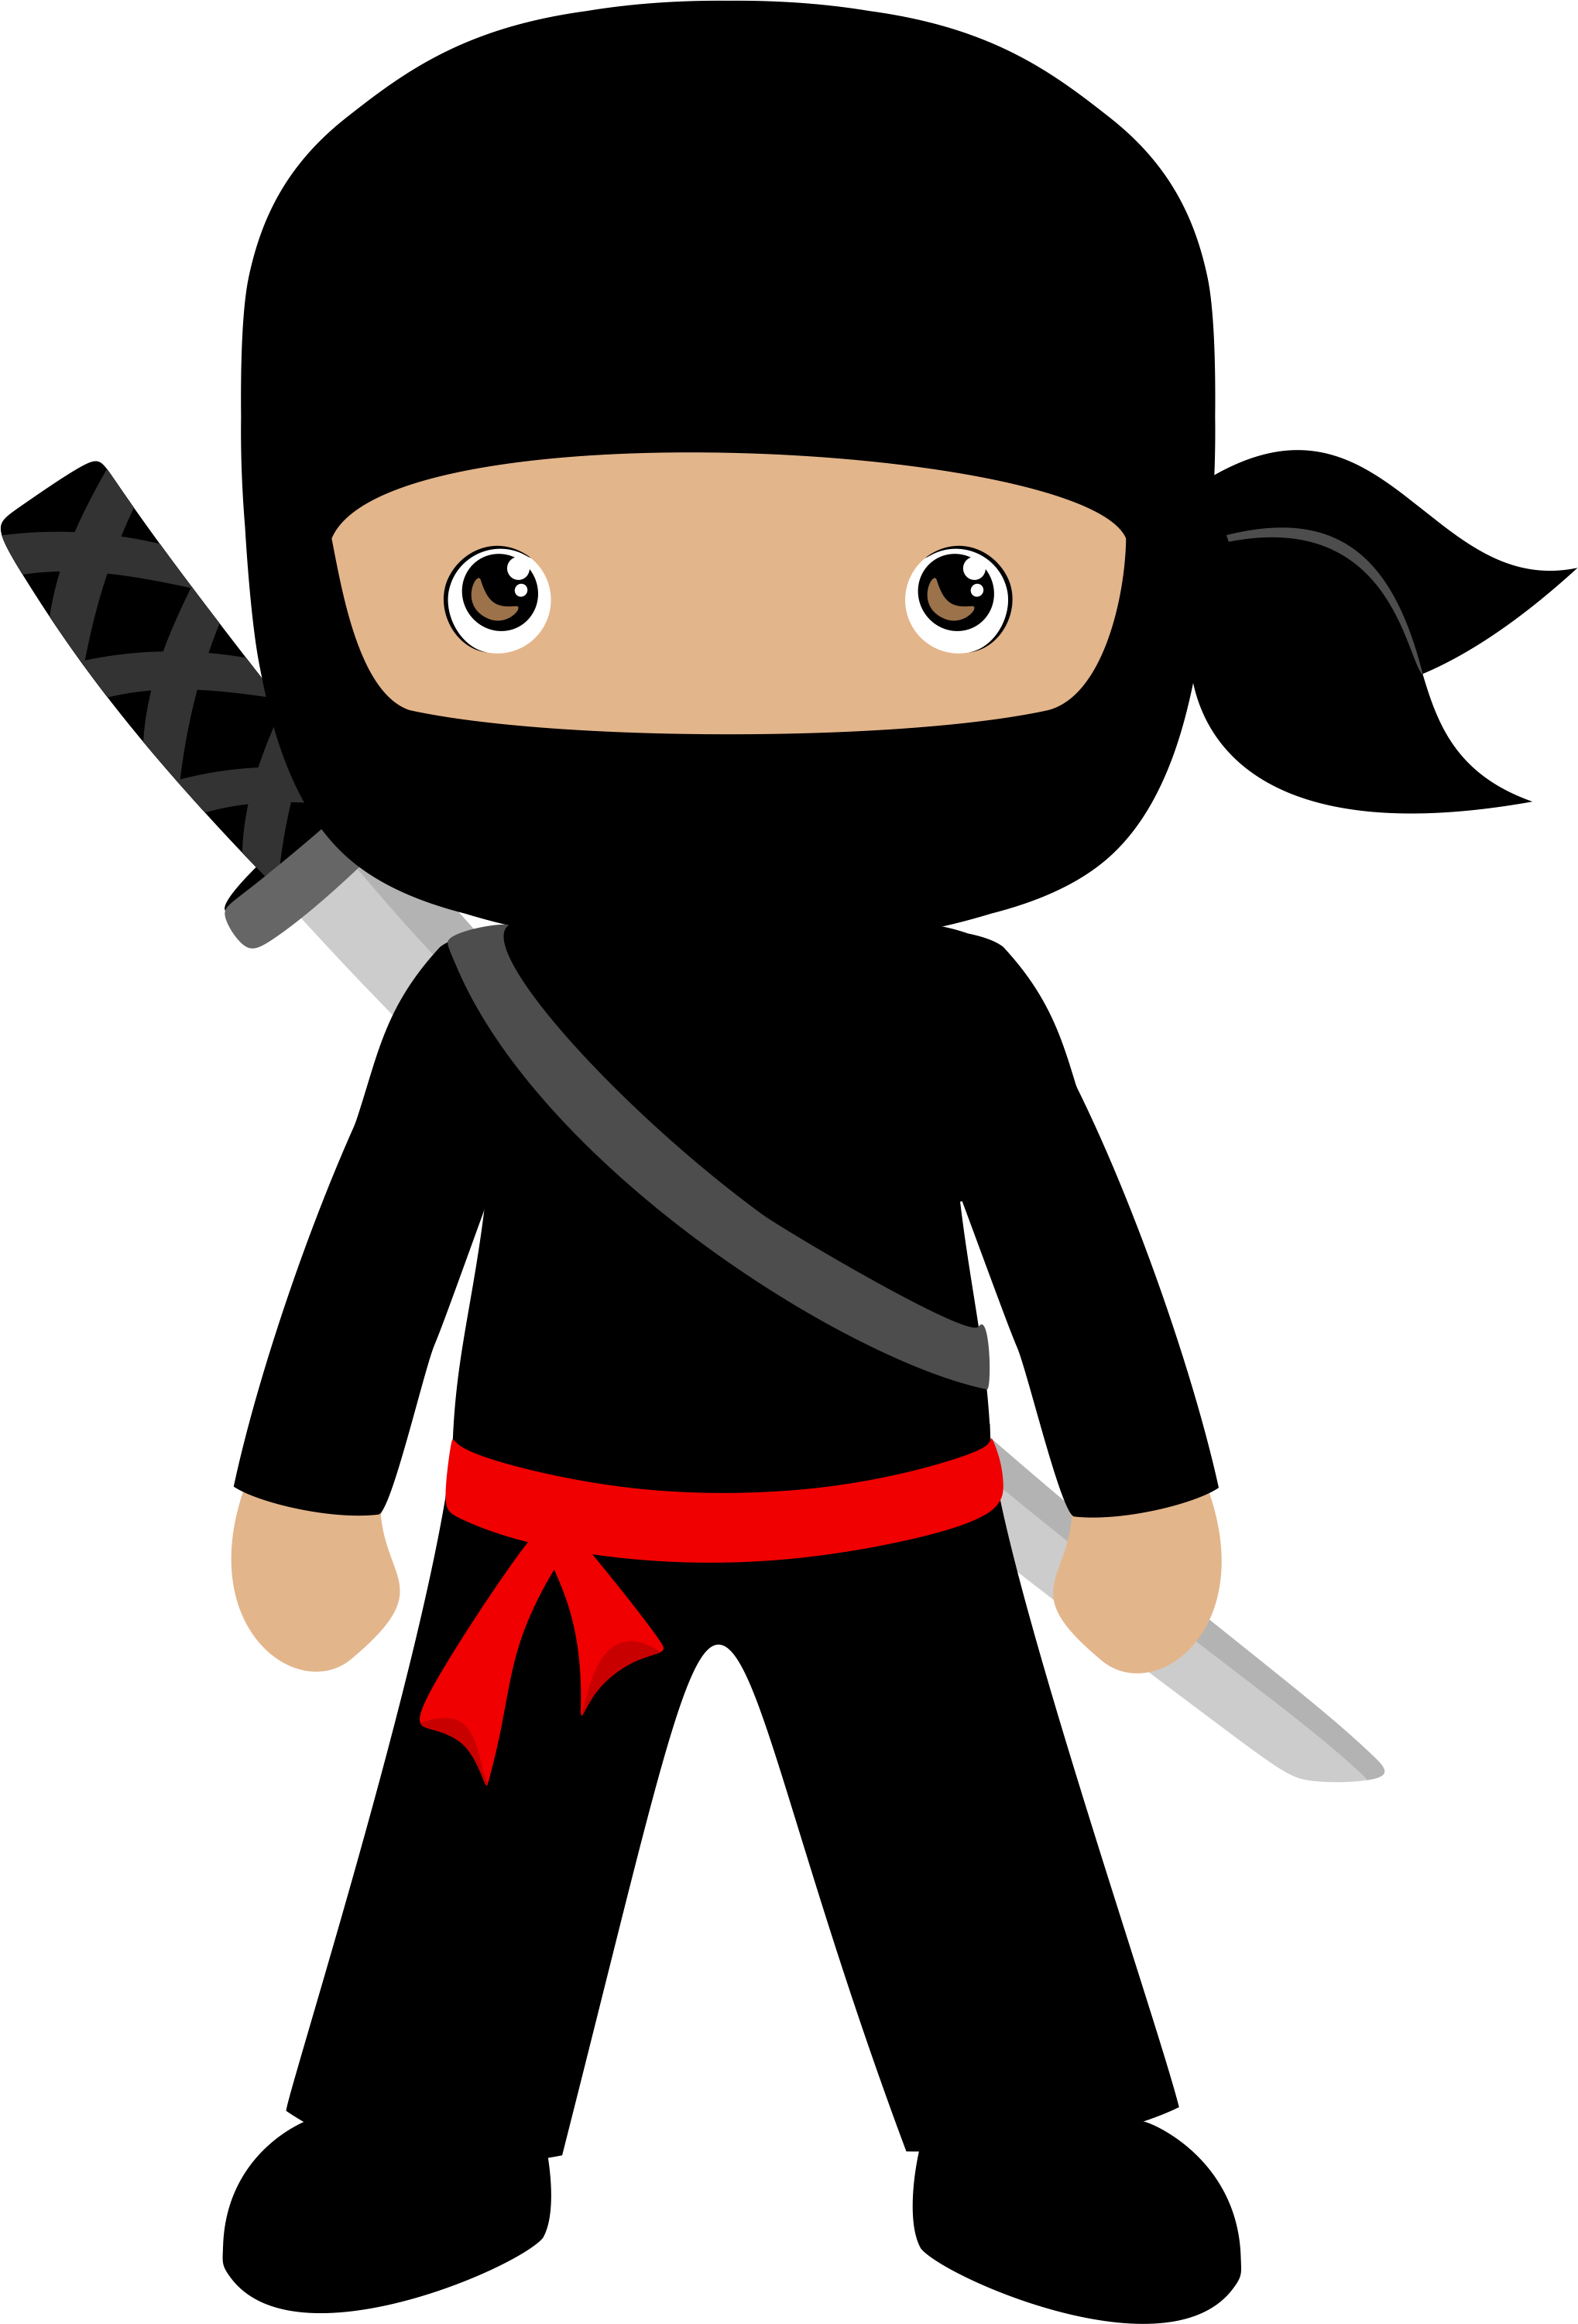 Ninja clipart kid ninja, Ninja kid ninja Transparent FREE